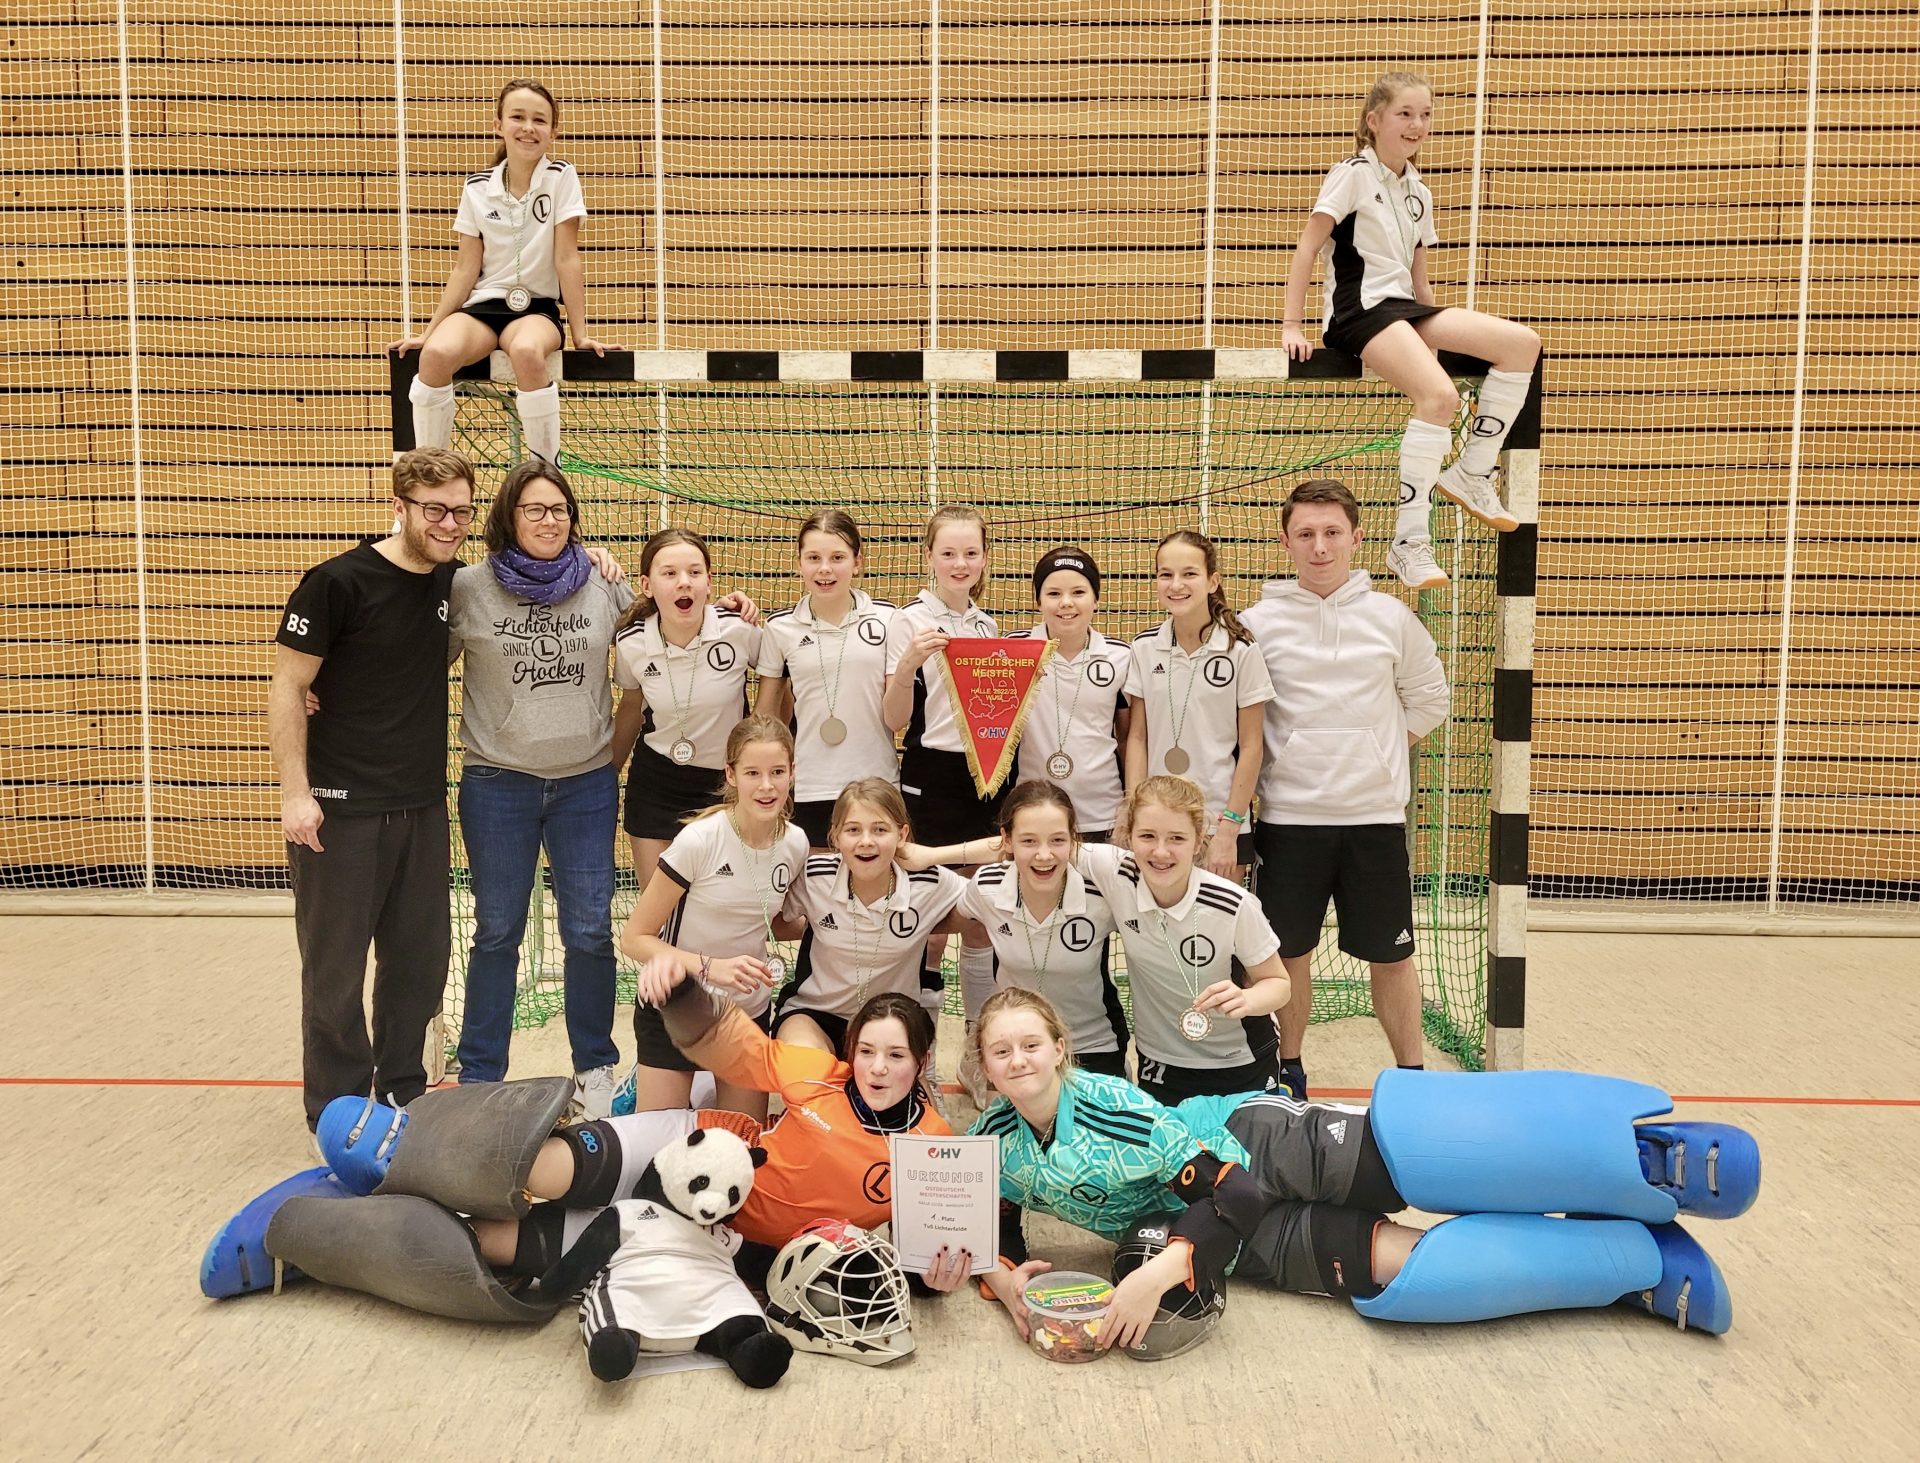 Das Beste kommt zum Schluss: Turnierbericht zum Sieg der U12-Mädchen beim OHV-Pokal